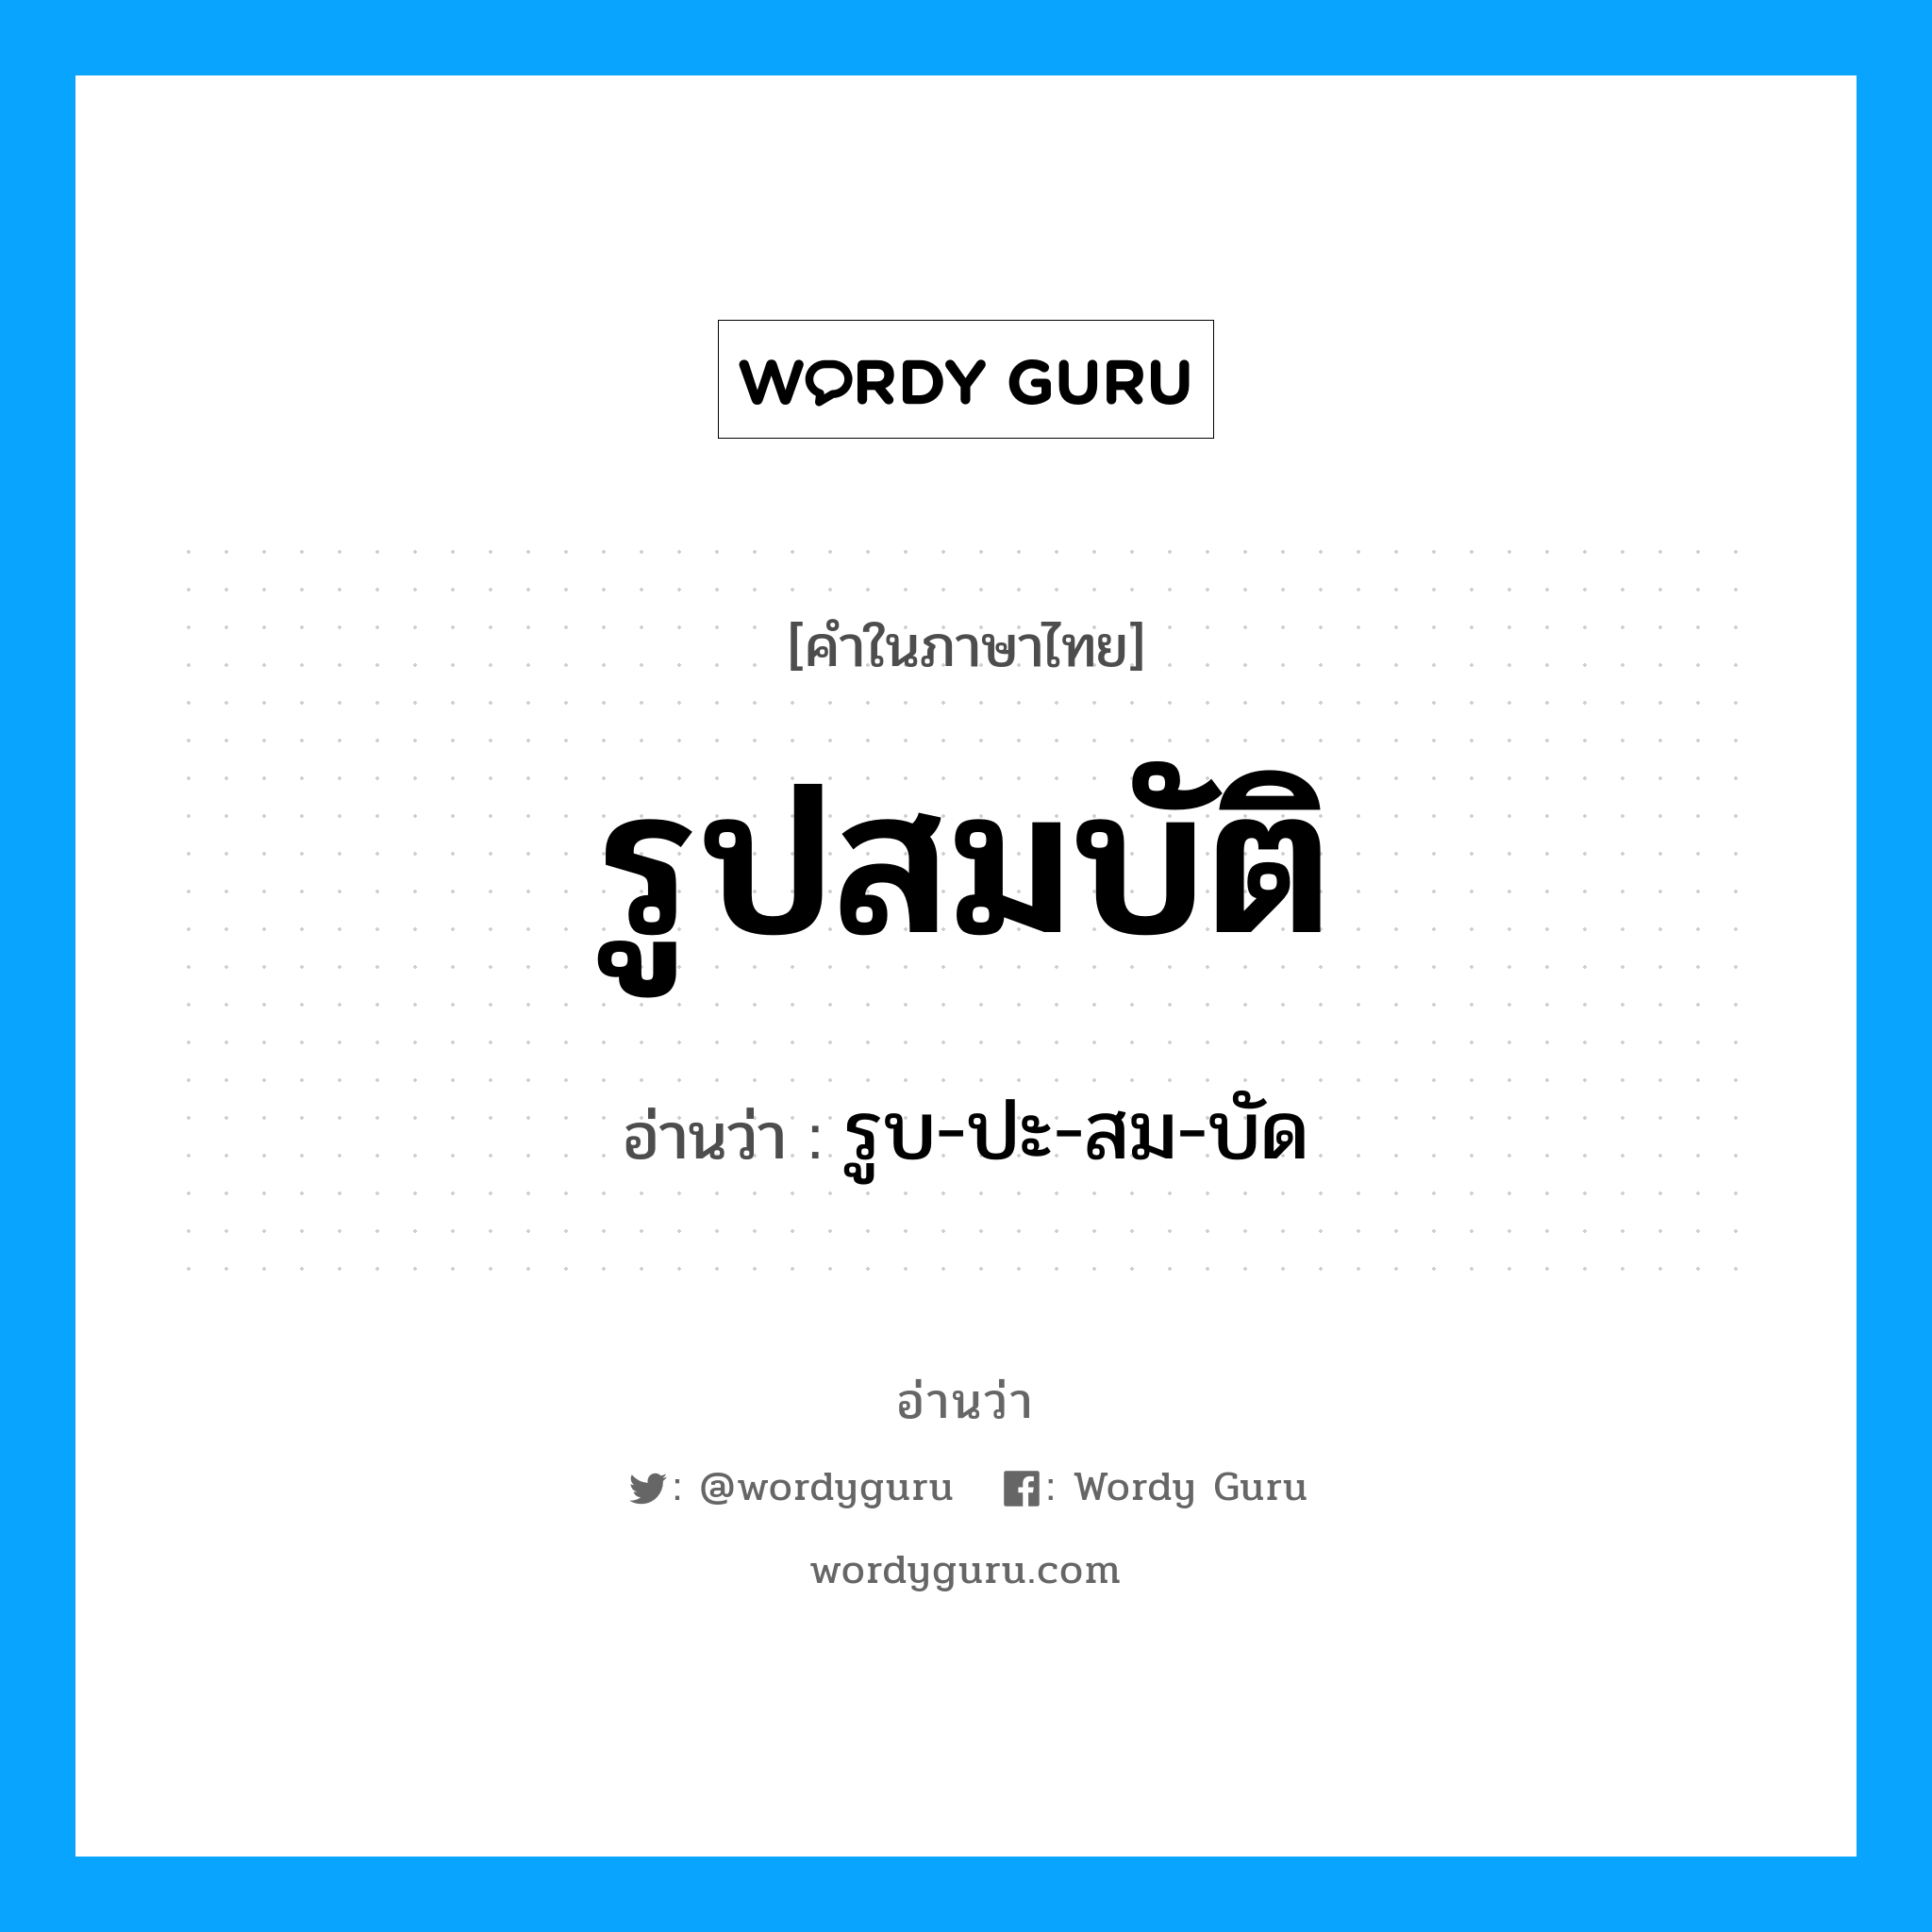 รูบ-ปะ-สม-บัด เป็นคำอ่านของคำไหน?, คำในภาษาไทย รูบ-ปะ-สม-บัด อ่านว่า รูปสมบัติ